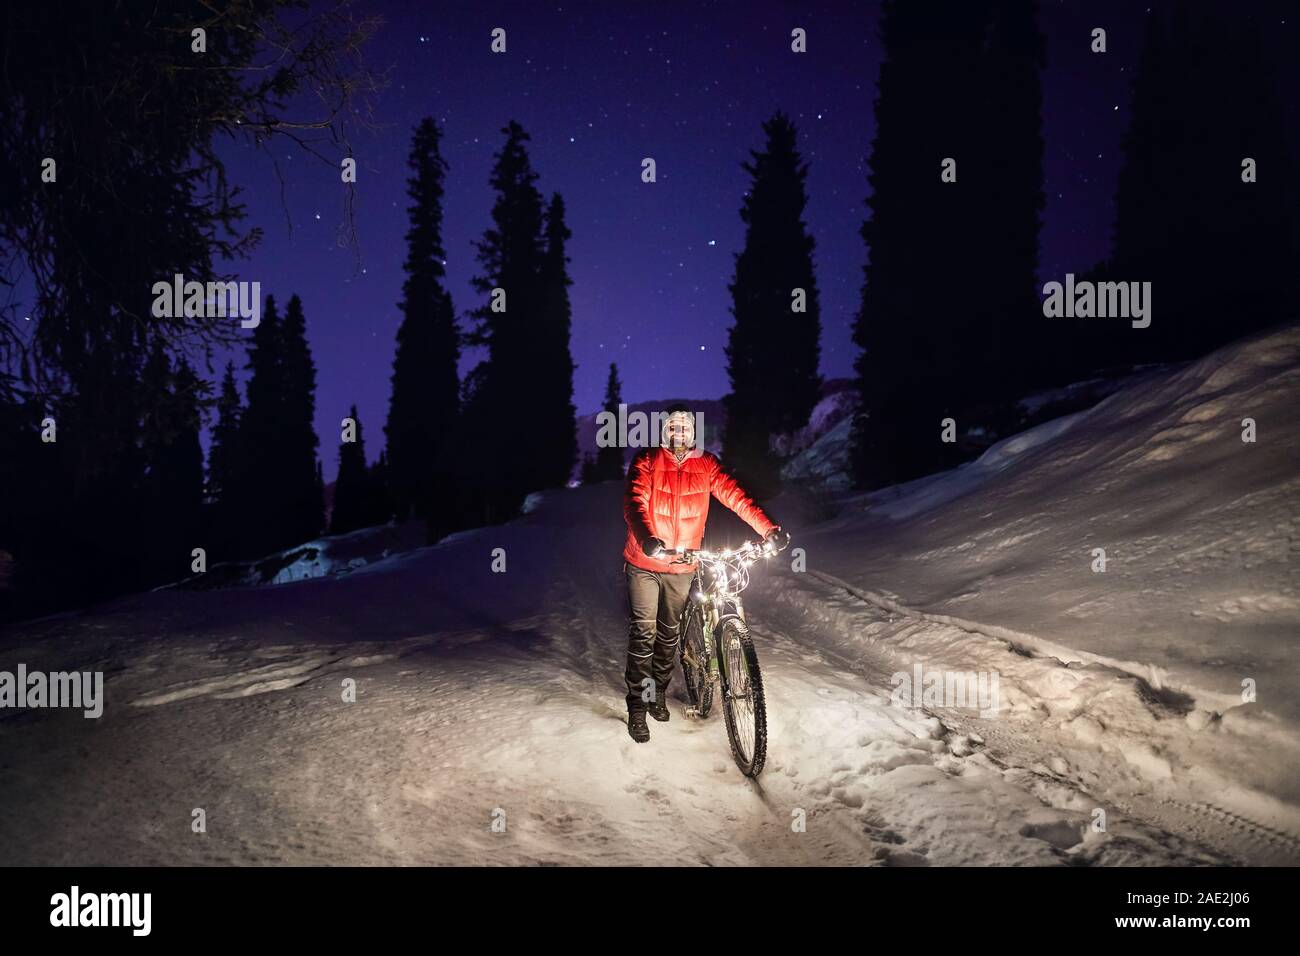 Uomo in camicia rossa con la bicicletta a inverno boschi innevati in montagna sotto il cielo notturno con stelle Foto Stock